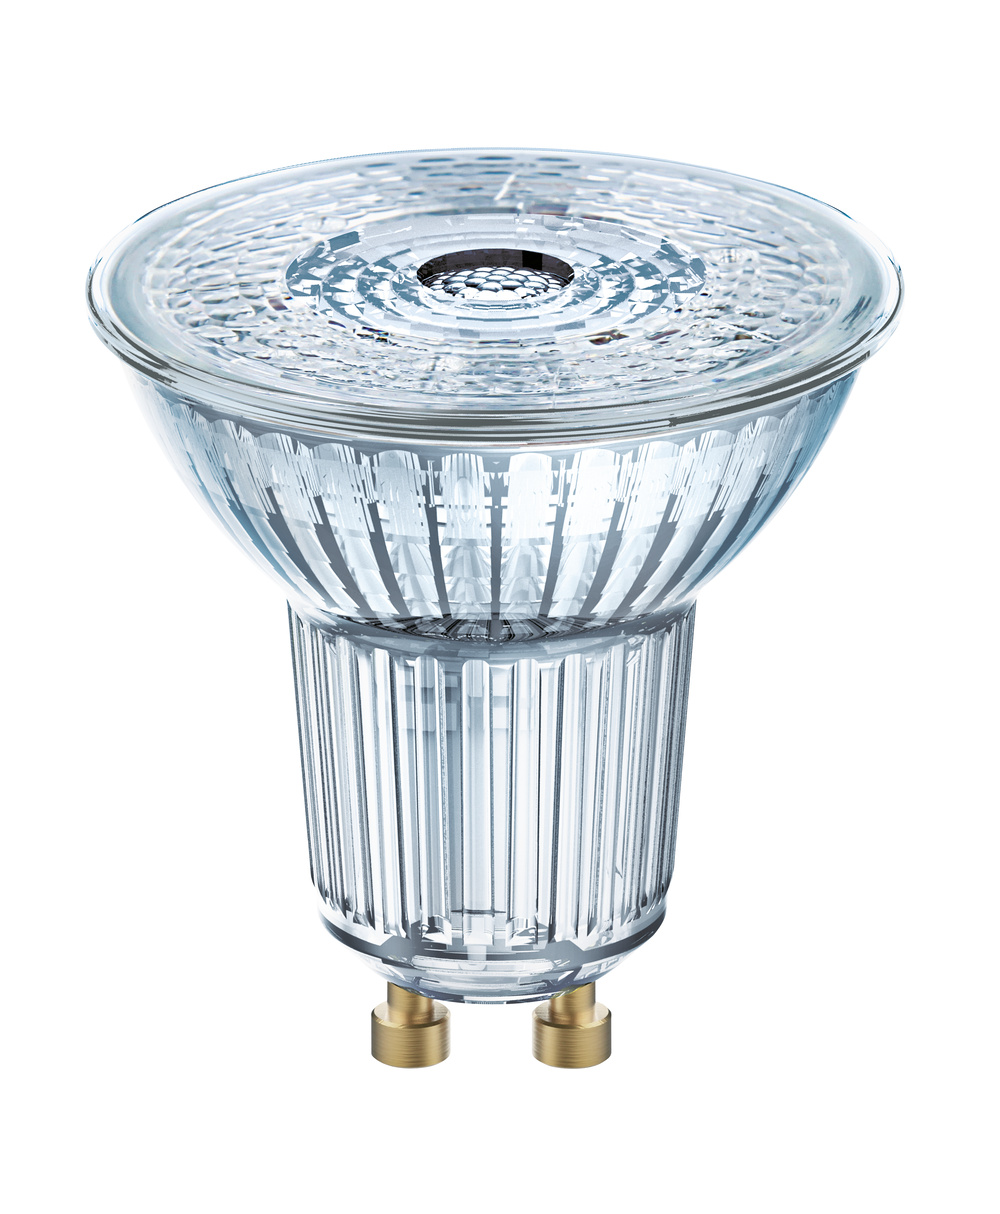 Ledvance LED lamp LED PAR16 P 4.3W 840 GU10 – 4099854068133 – replacement for 50 W - 4099854068133